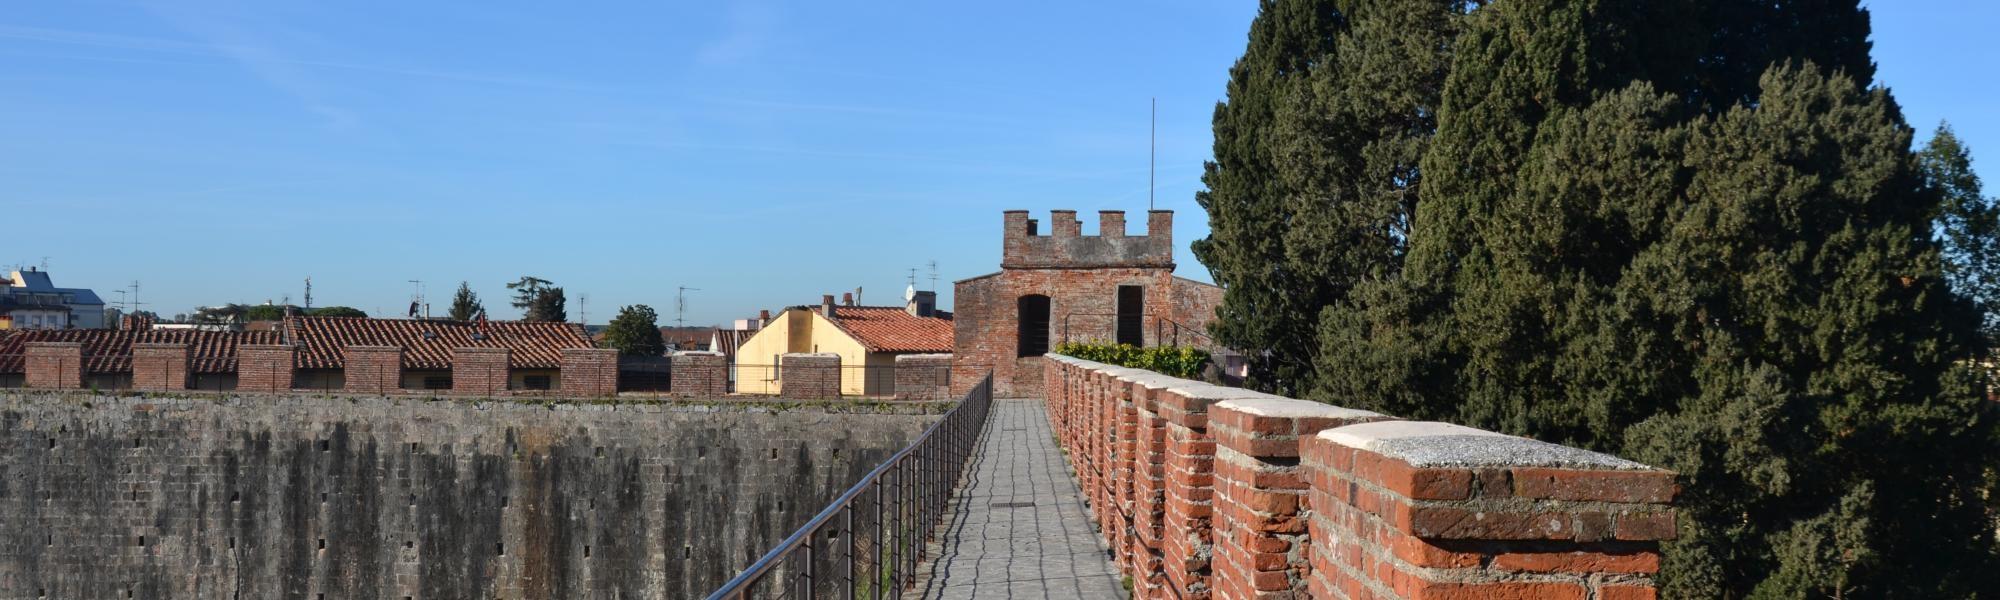 Camminamento sulle mura (Mura di Pisa)